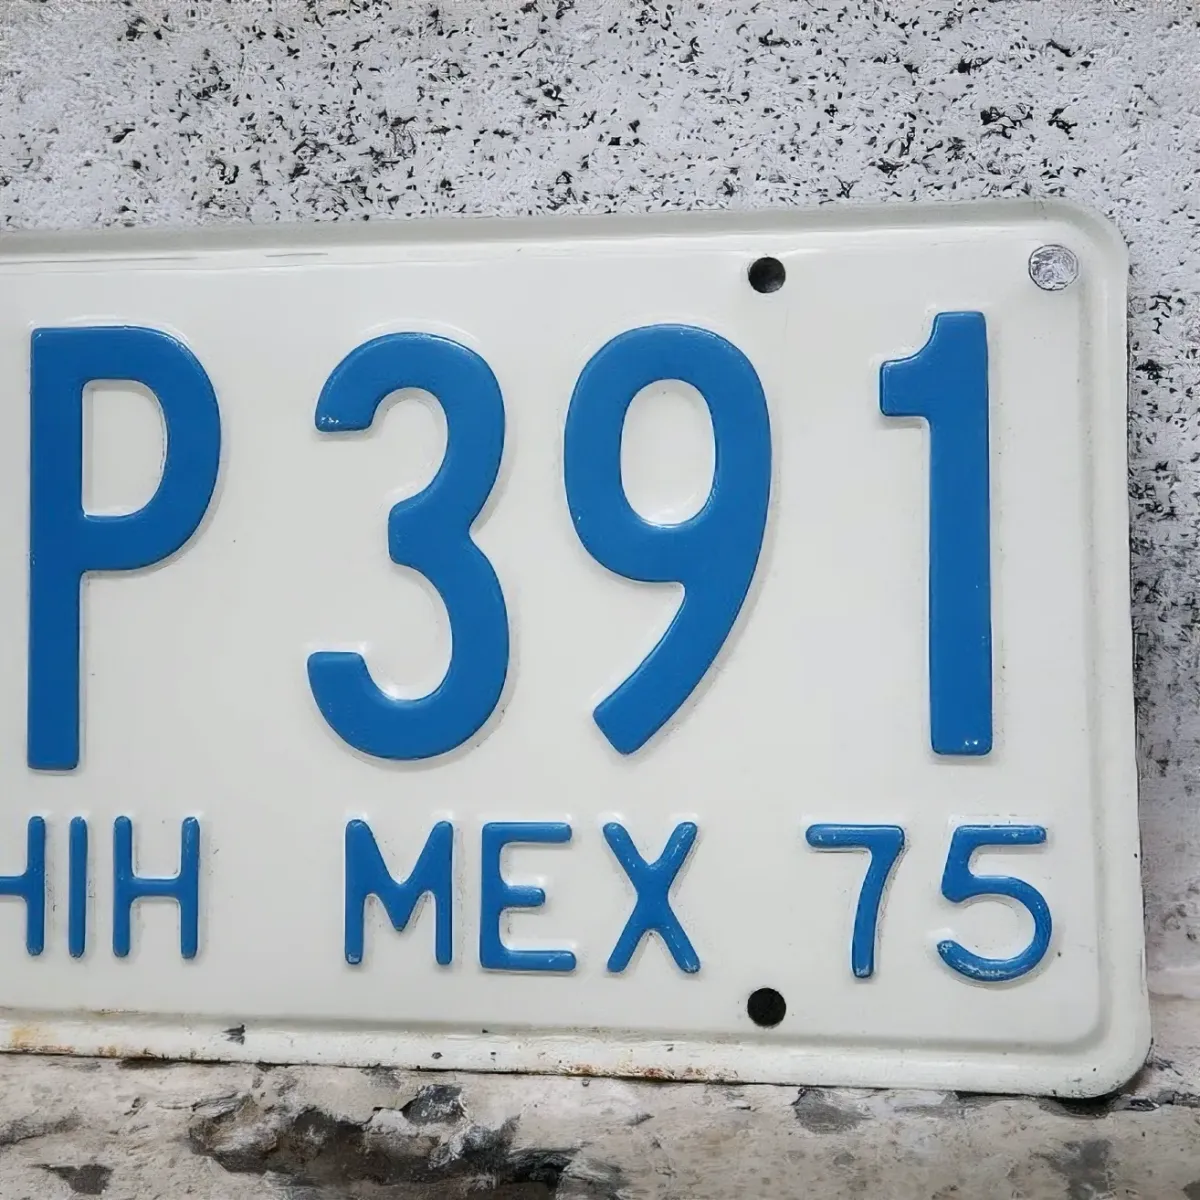 CHIHUAHUA MEXICO ビンテージ ナンバープレート